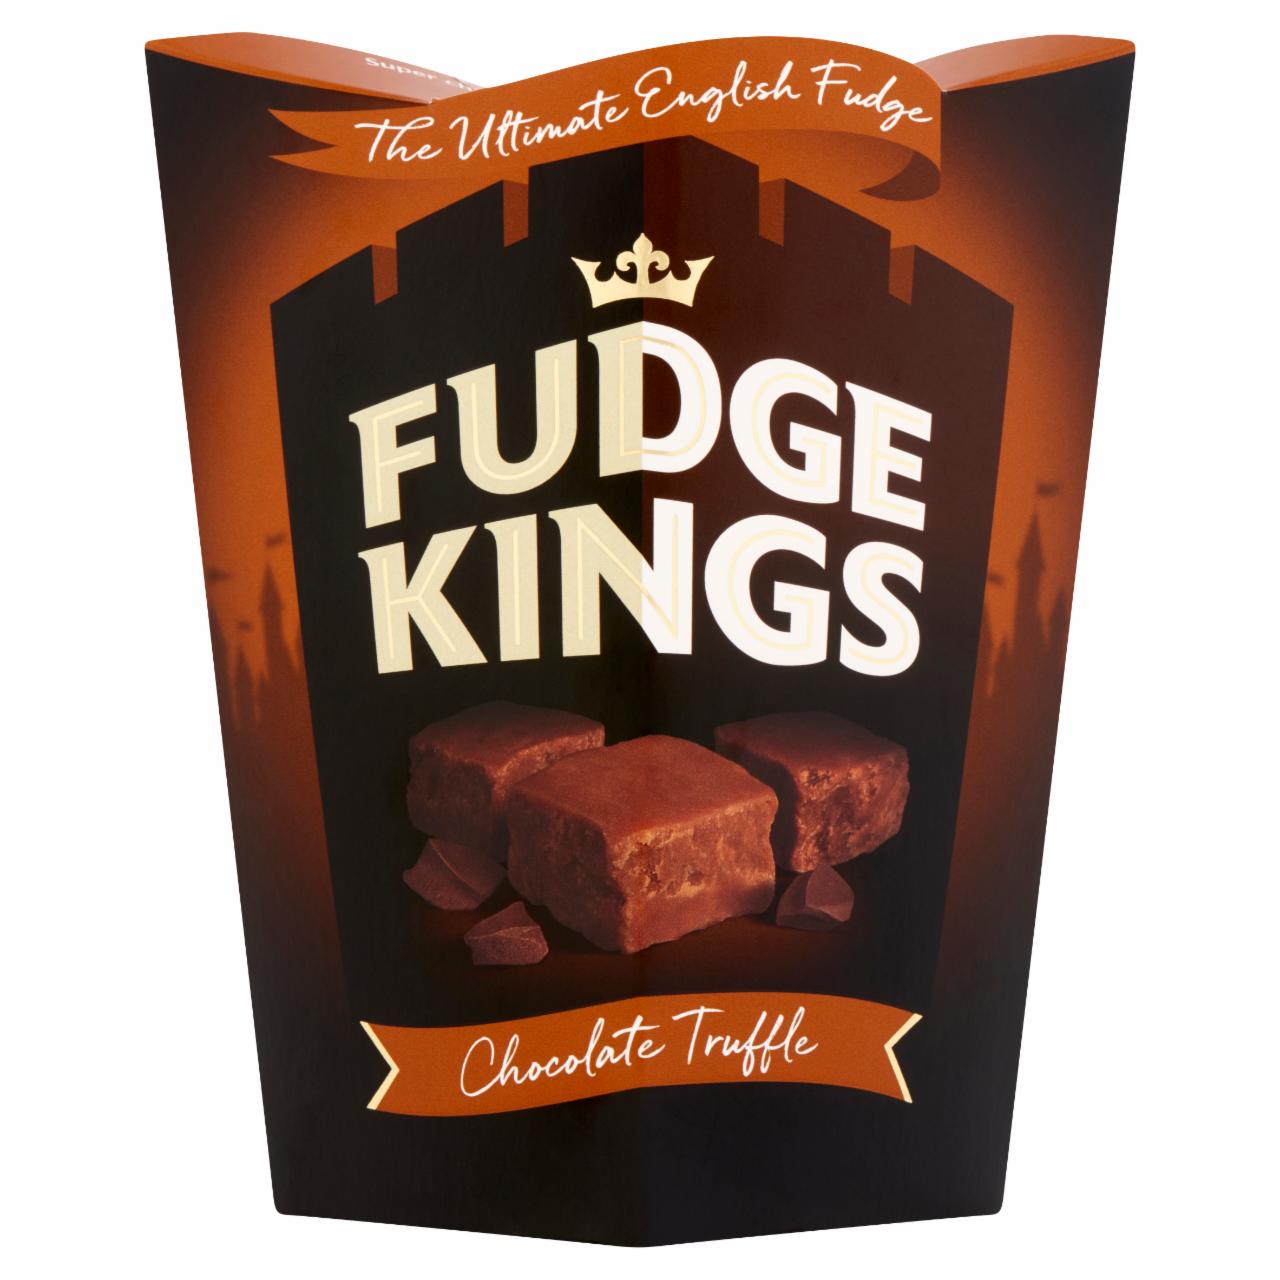 Képek - Fudge Kings étcsokoládés vajkaramella 150 g